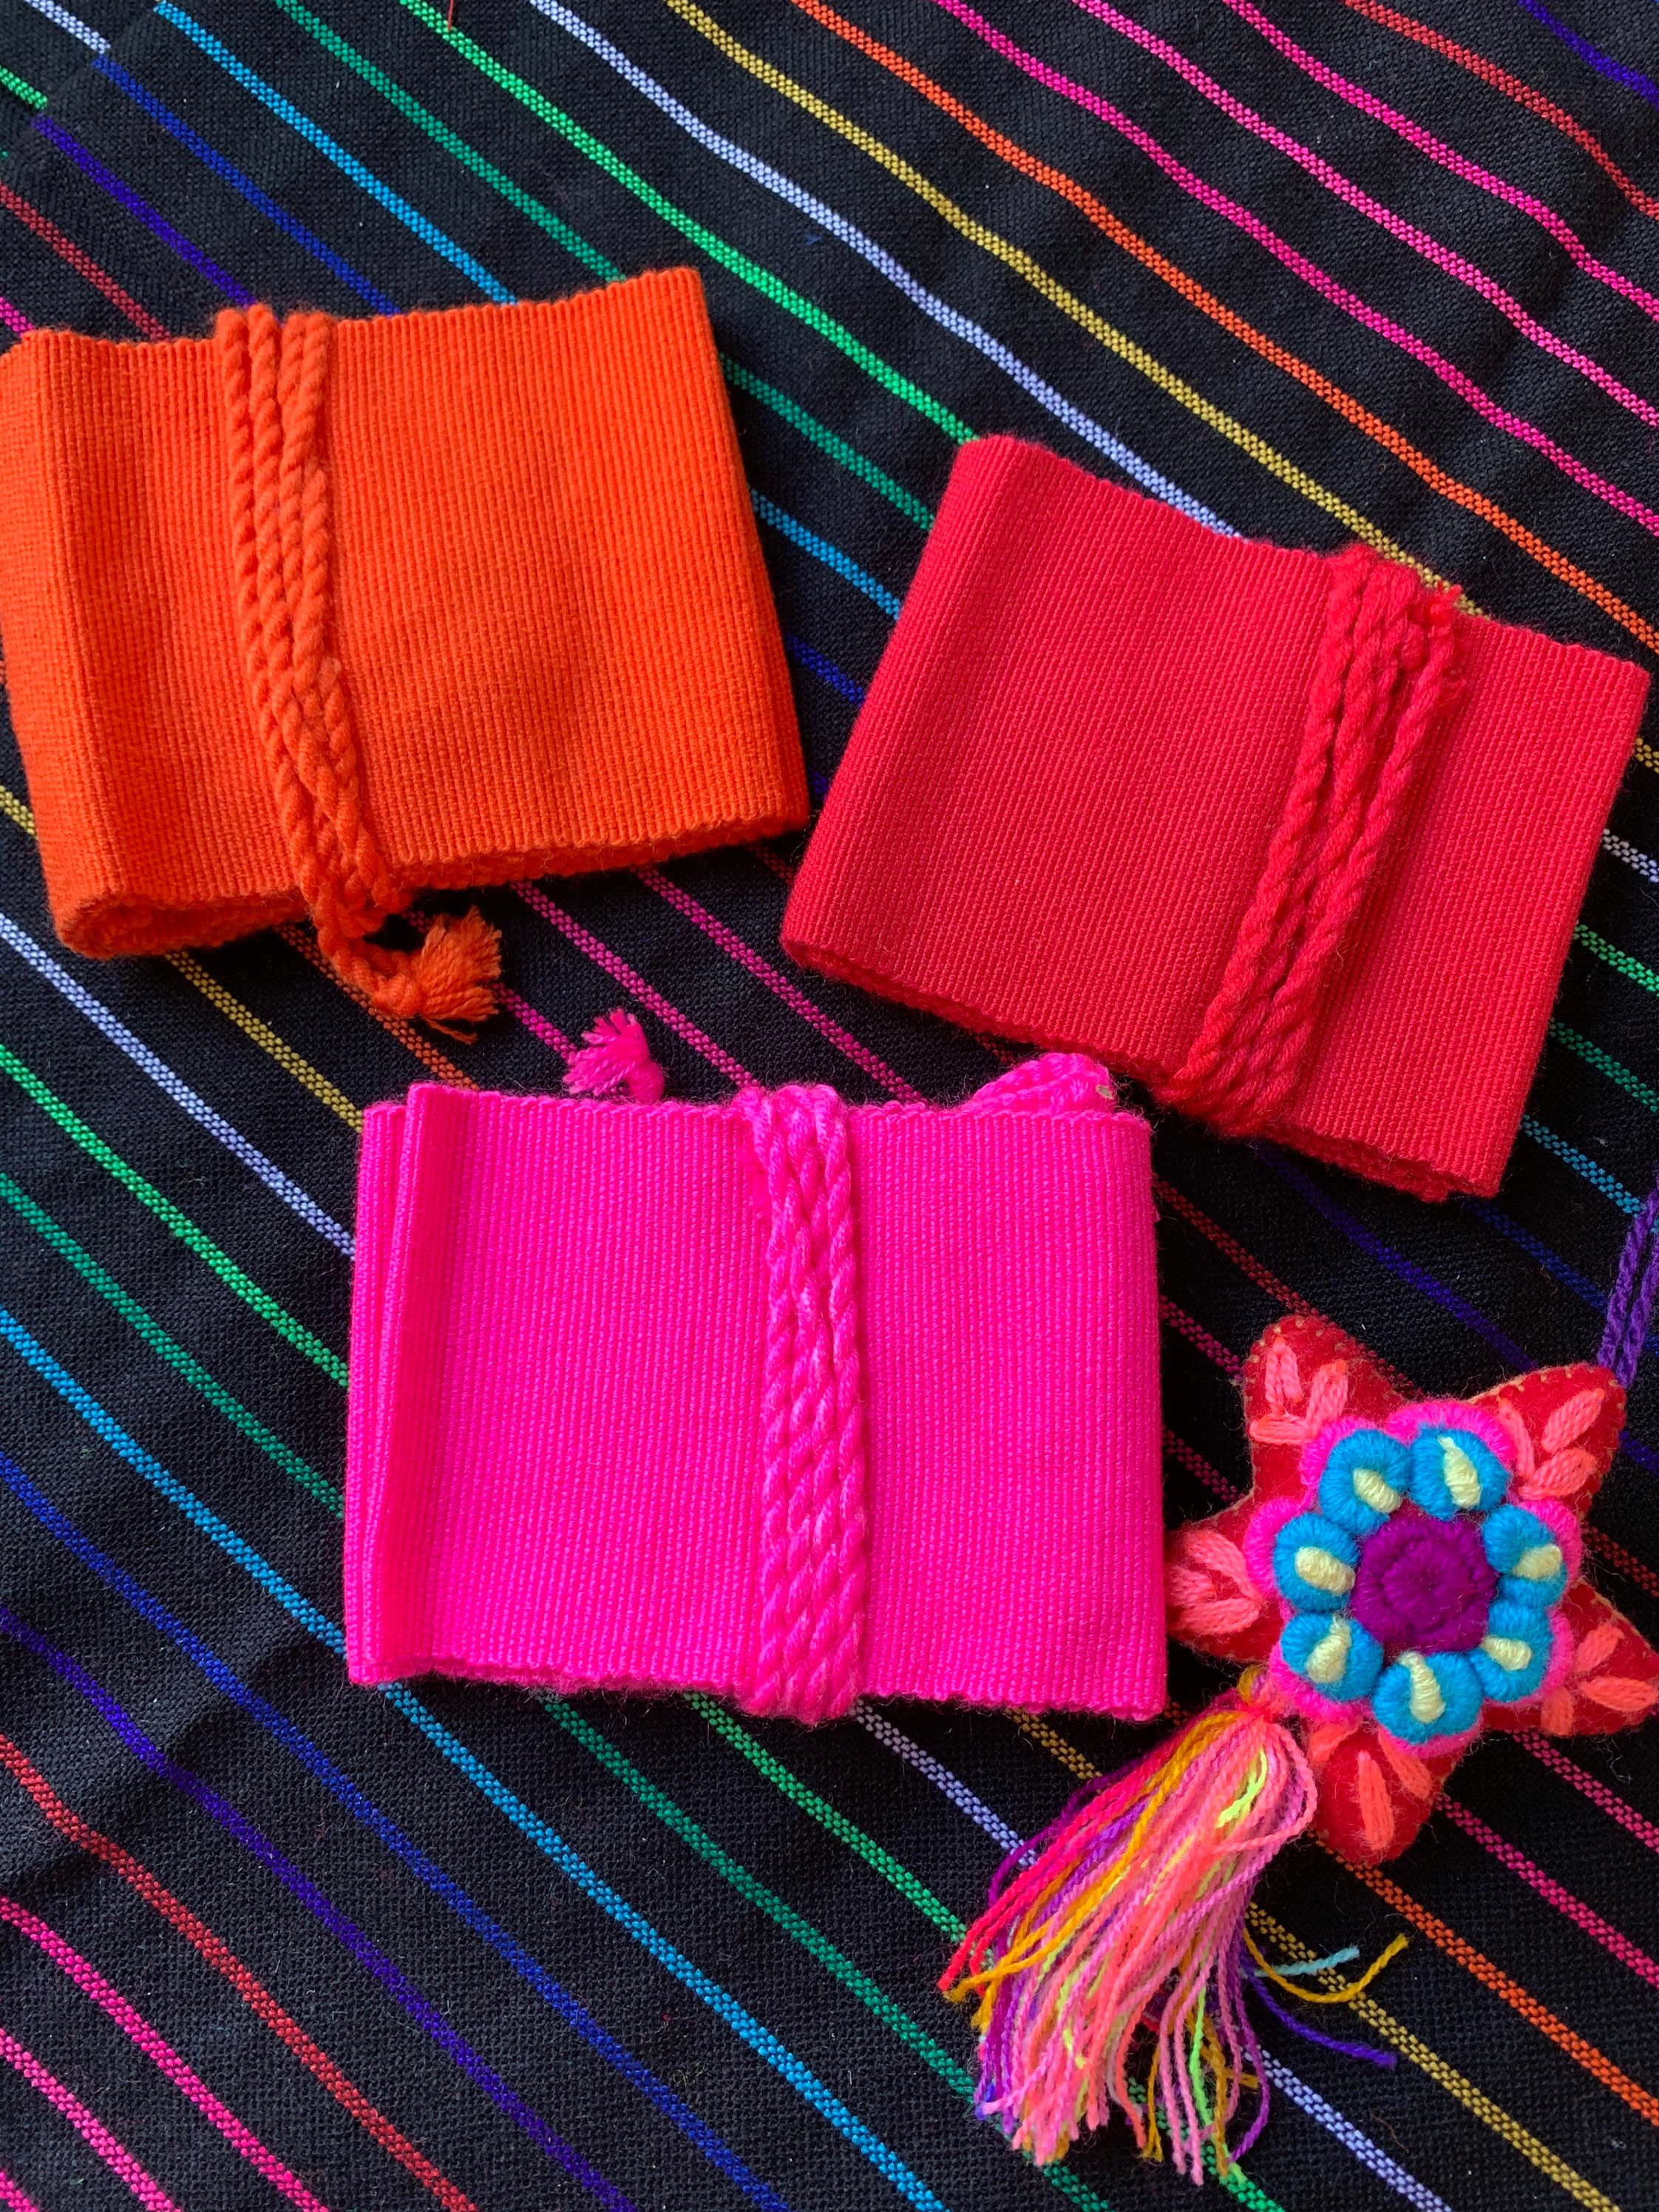 Cinturones Mexicanos para mujer Cintos artesanales - Etsy México